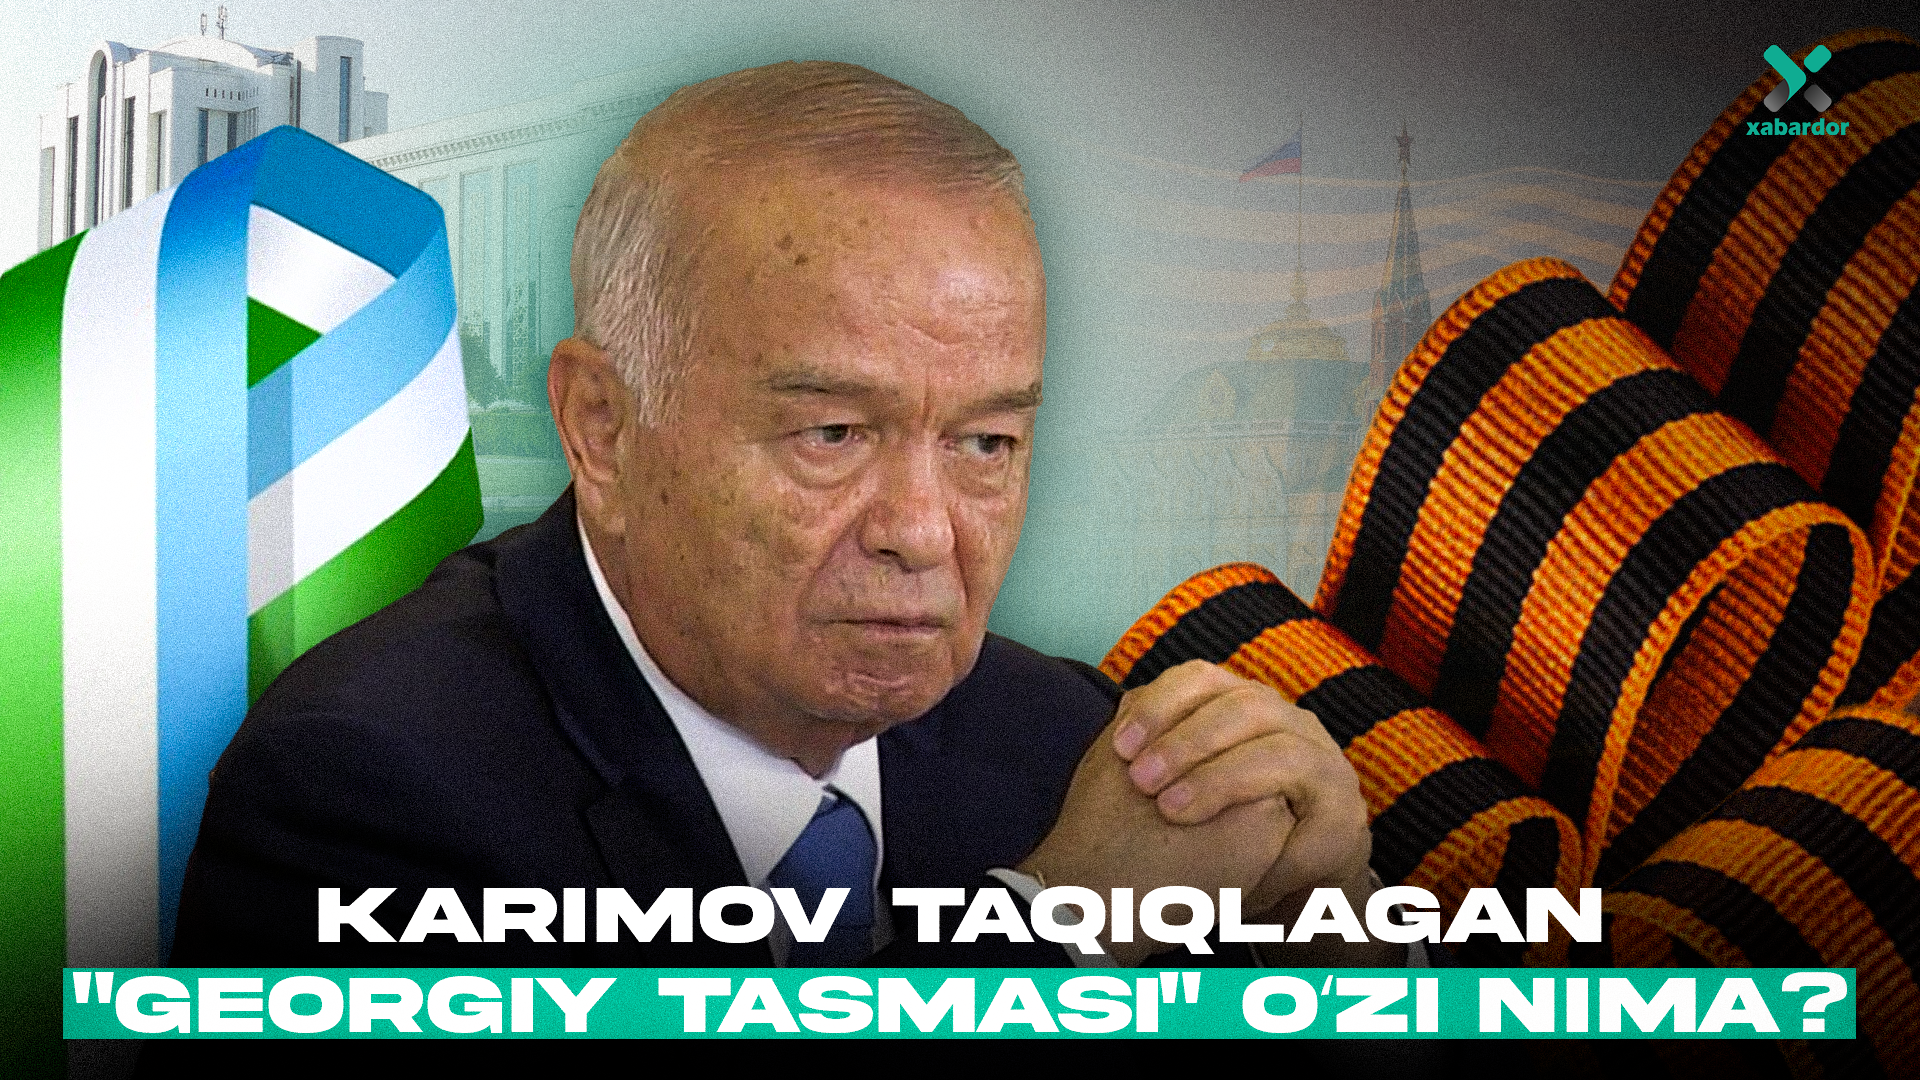 
											
											Karimov taqiqlagan “Georgiy tasmasi” oʻzi nima?
											
											